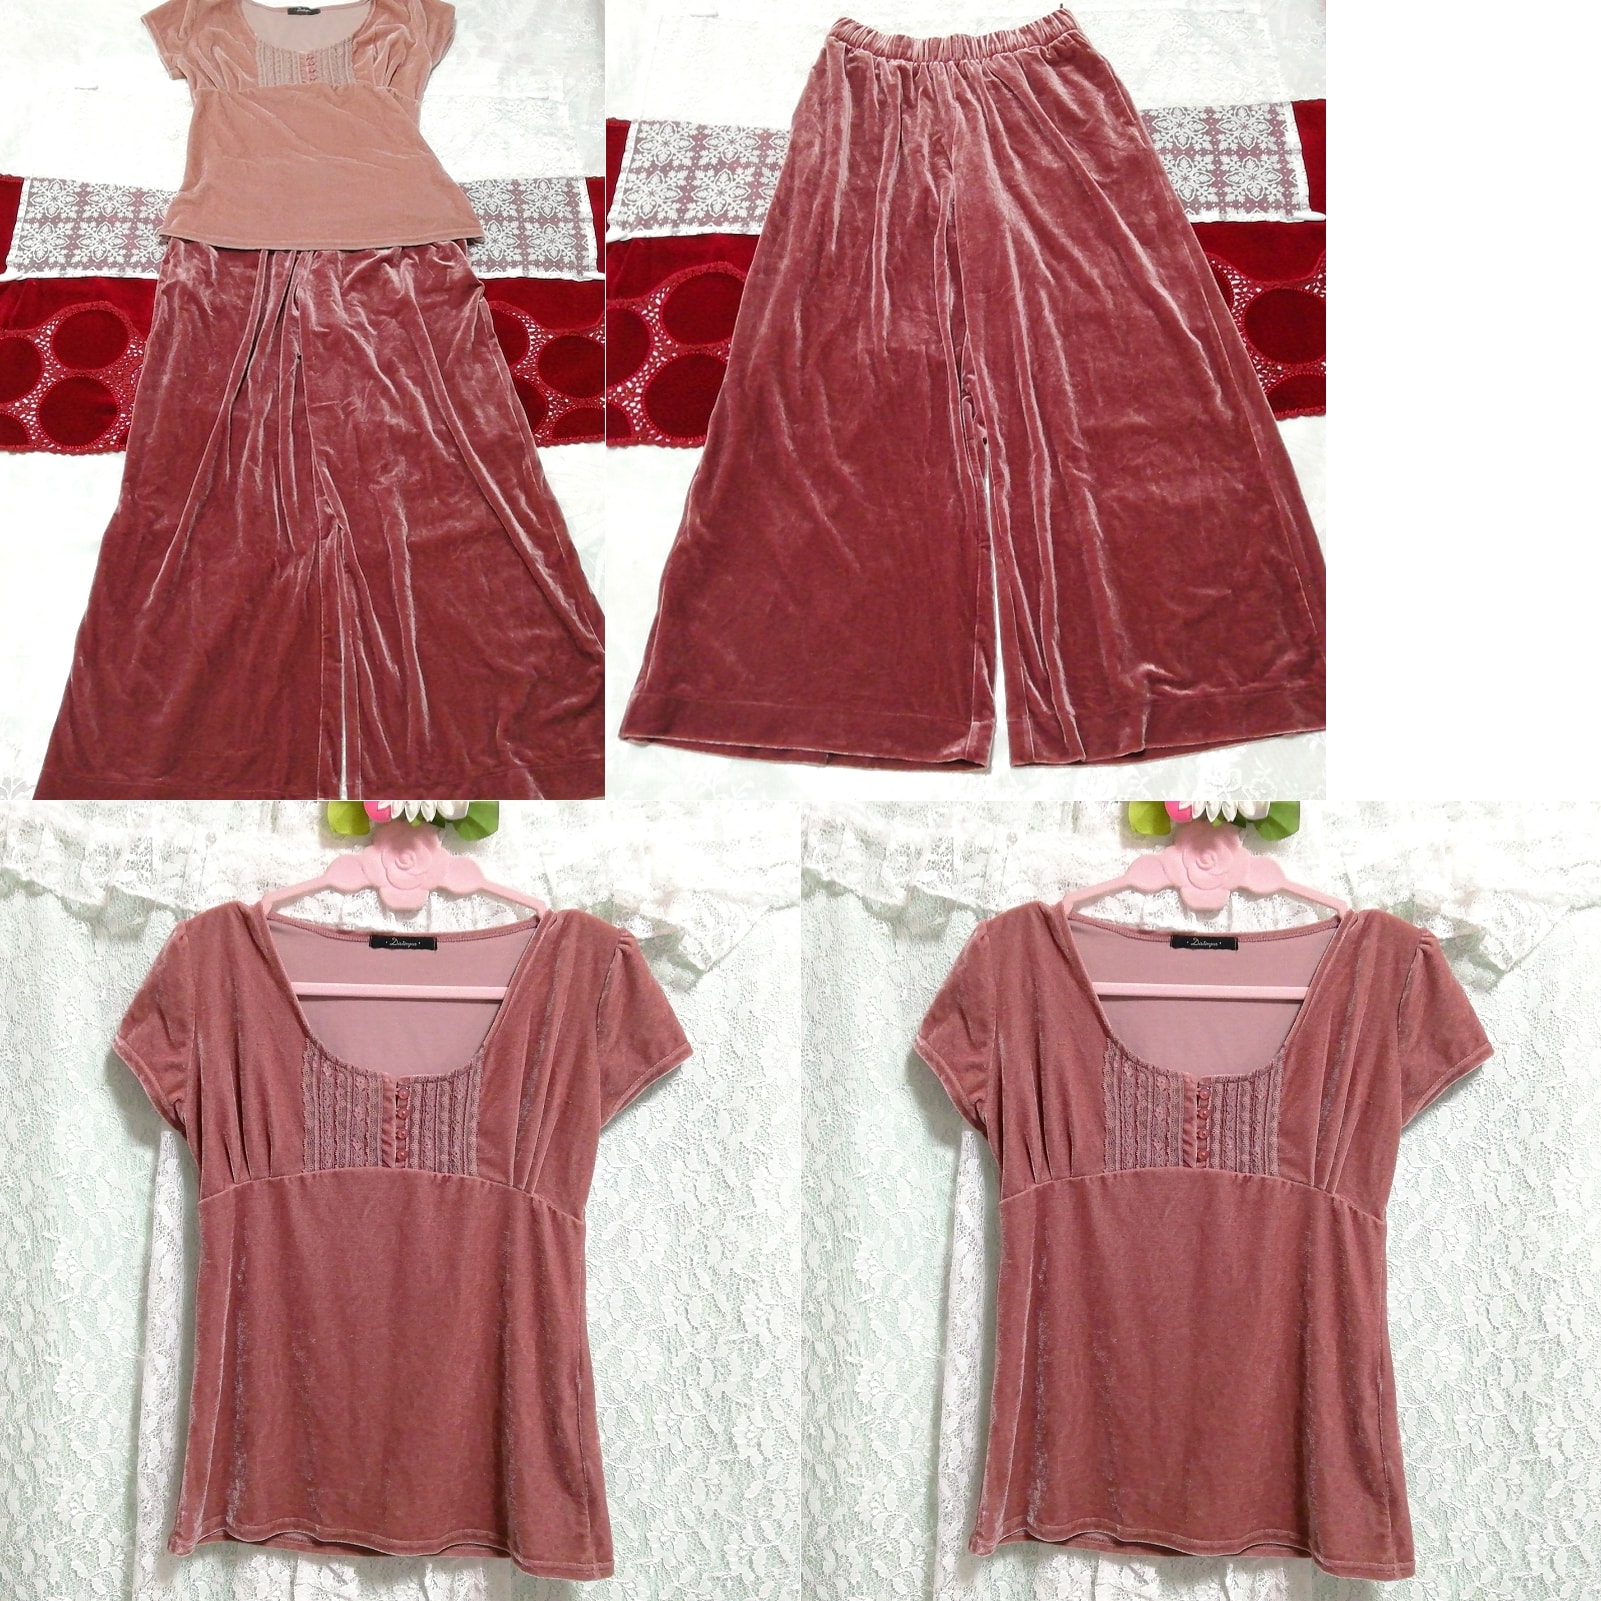 핑크 반소매 튜닉 네글리제 나이트가운 로즈 레드 벨루어 스커트 2P, 패션, 숙녀 패션, 잠옷, 잠옷